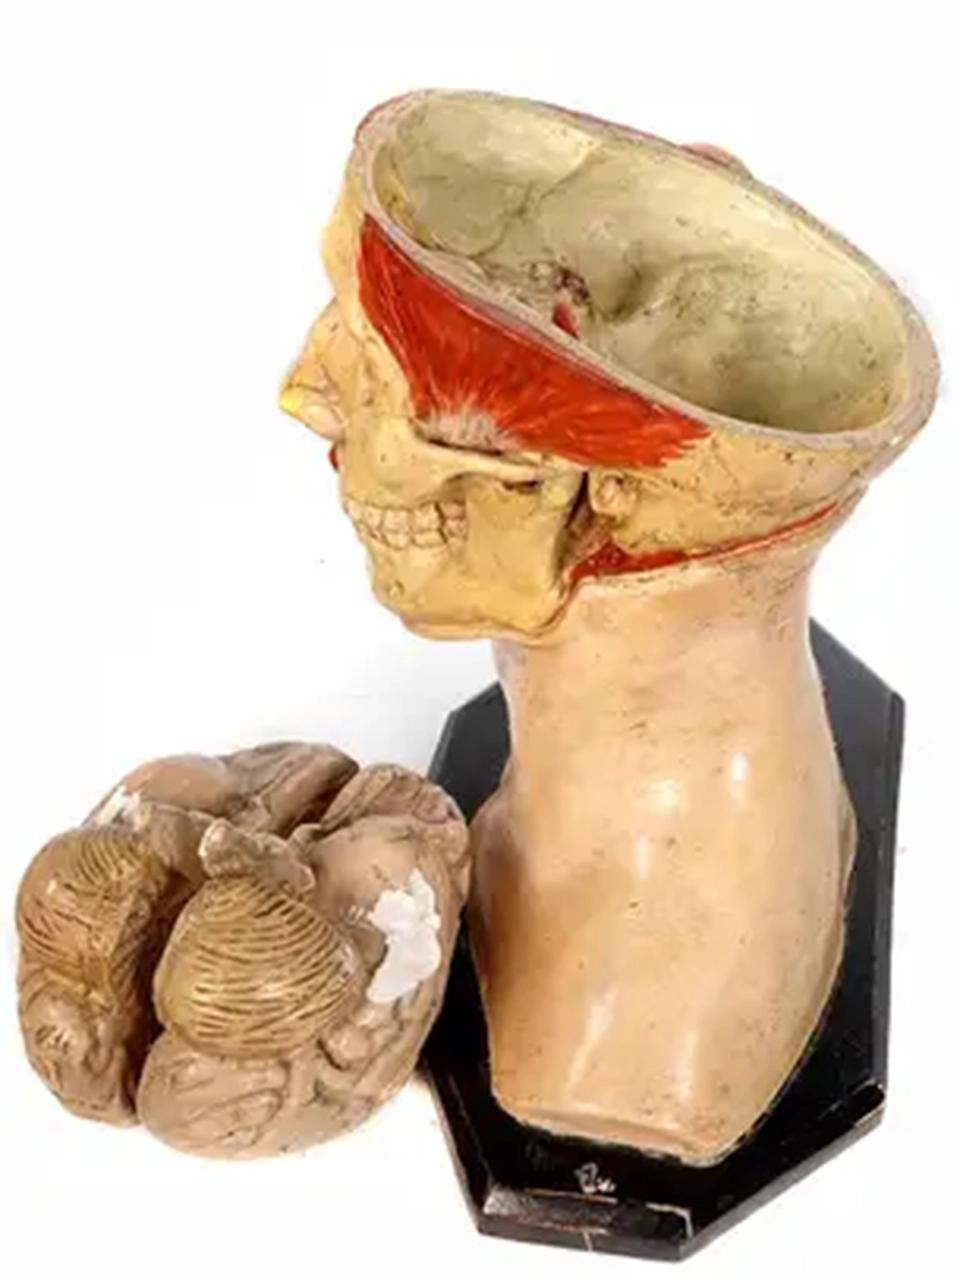 Dies ist ein frühes und qualitativ hochwertiges, handbemaltes, antikes anatomisches Gipsmodell eines erwachsenen menschlichen Kopfes. Ich würde dies auf das Jahr 1900 datieren. Die Details sind gut gemacht und das Gehirn ist abnehmbar und in zwei